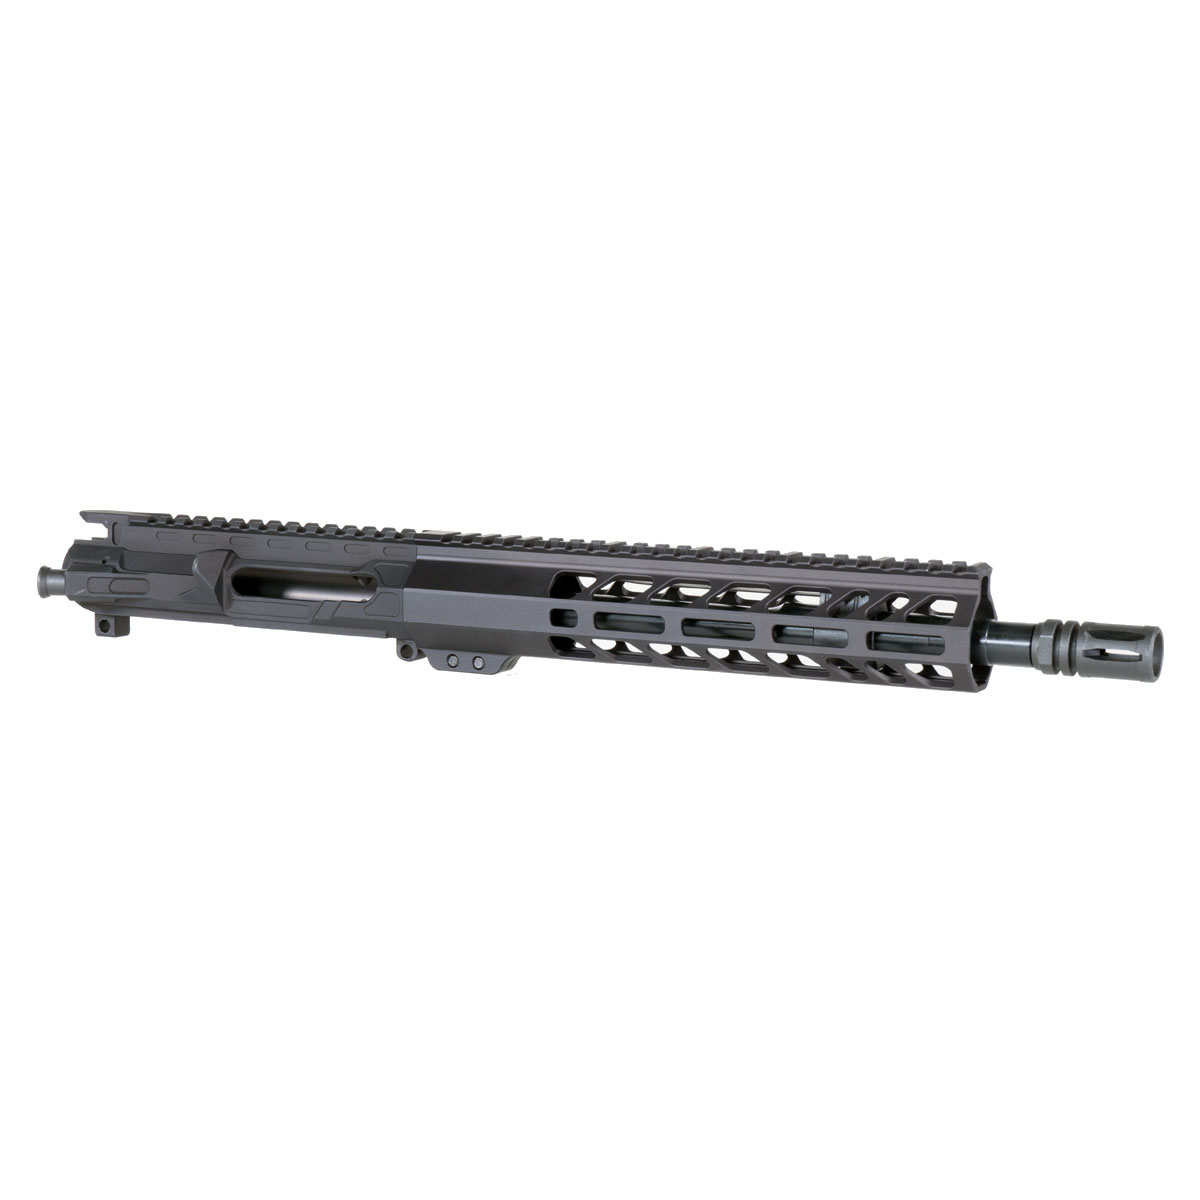 DD 'The Gangster' 11.5-inch AR-15 5.56 NATO QPQ Nitride Pistol Upper Build Kit